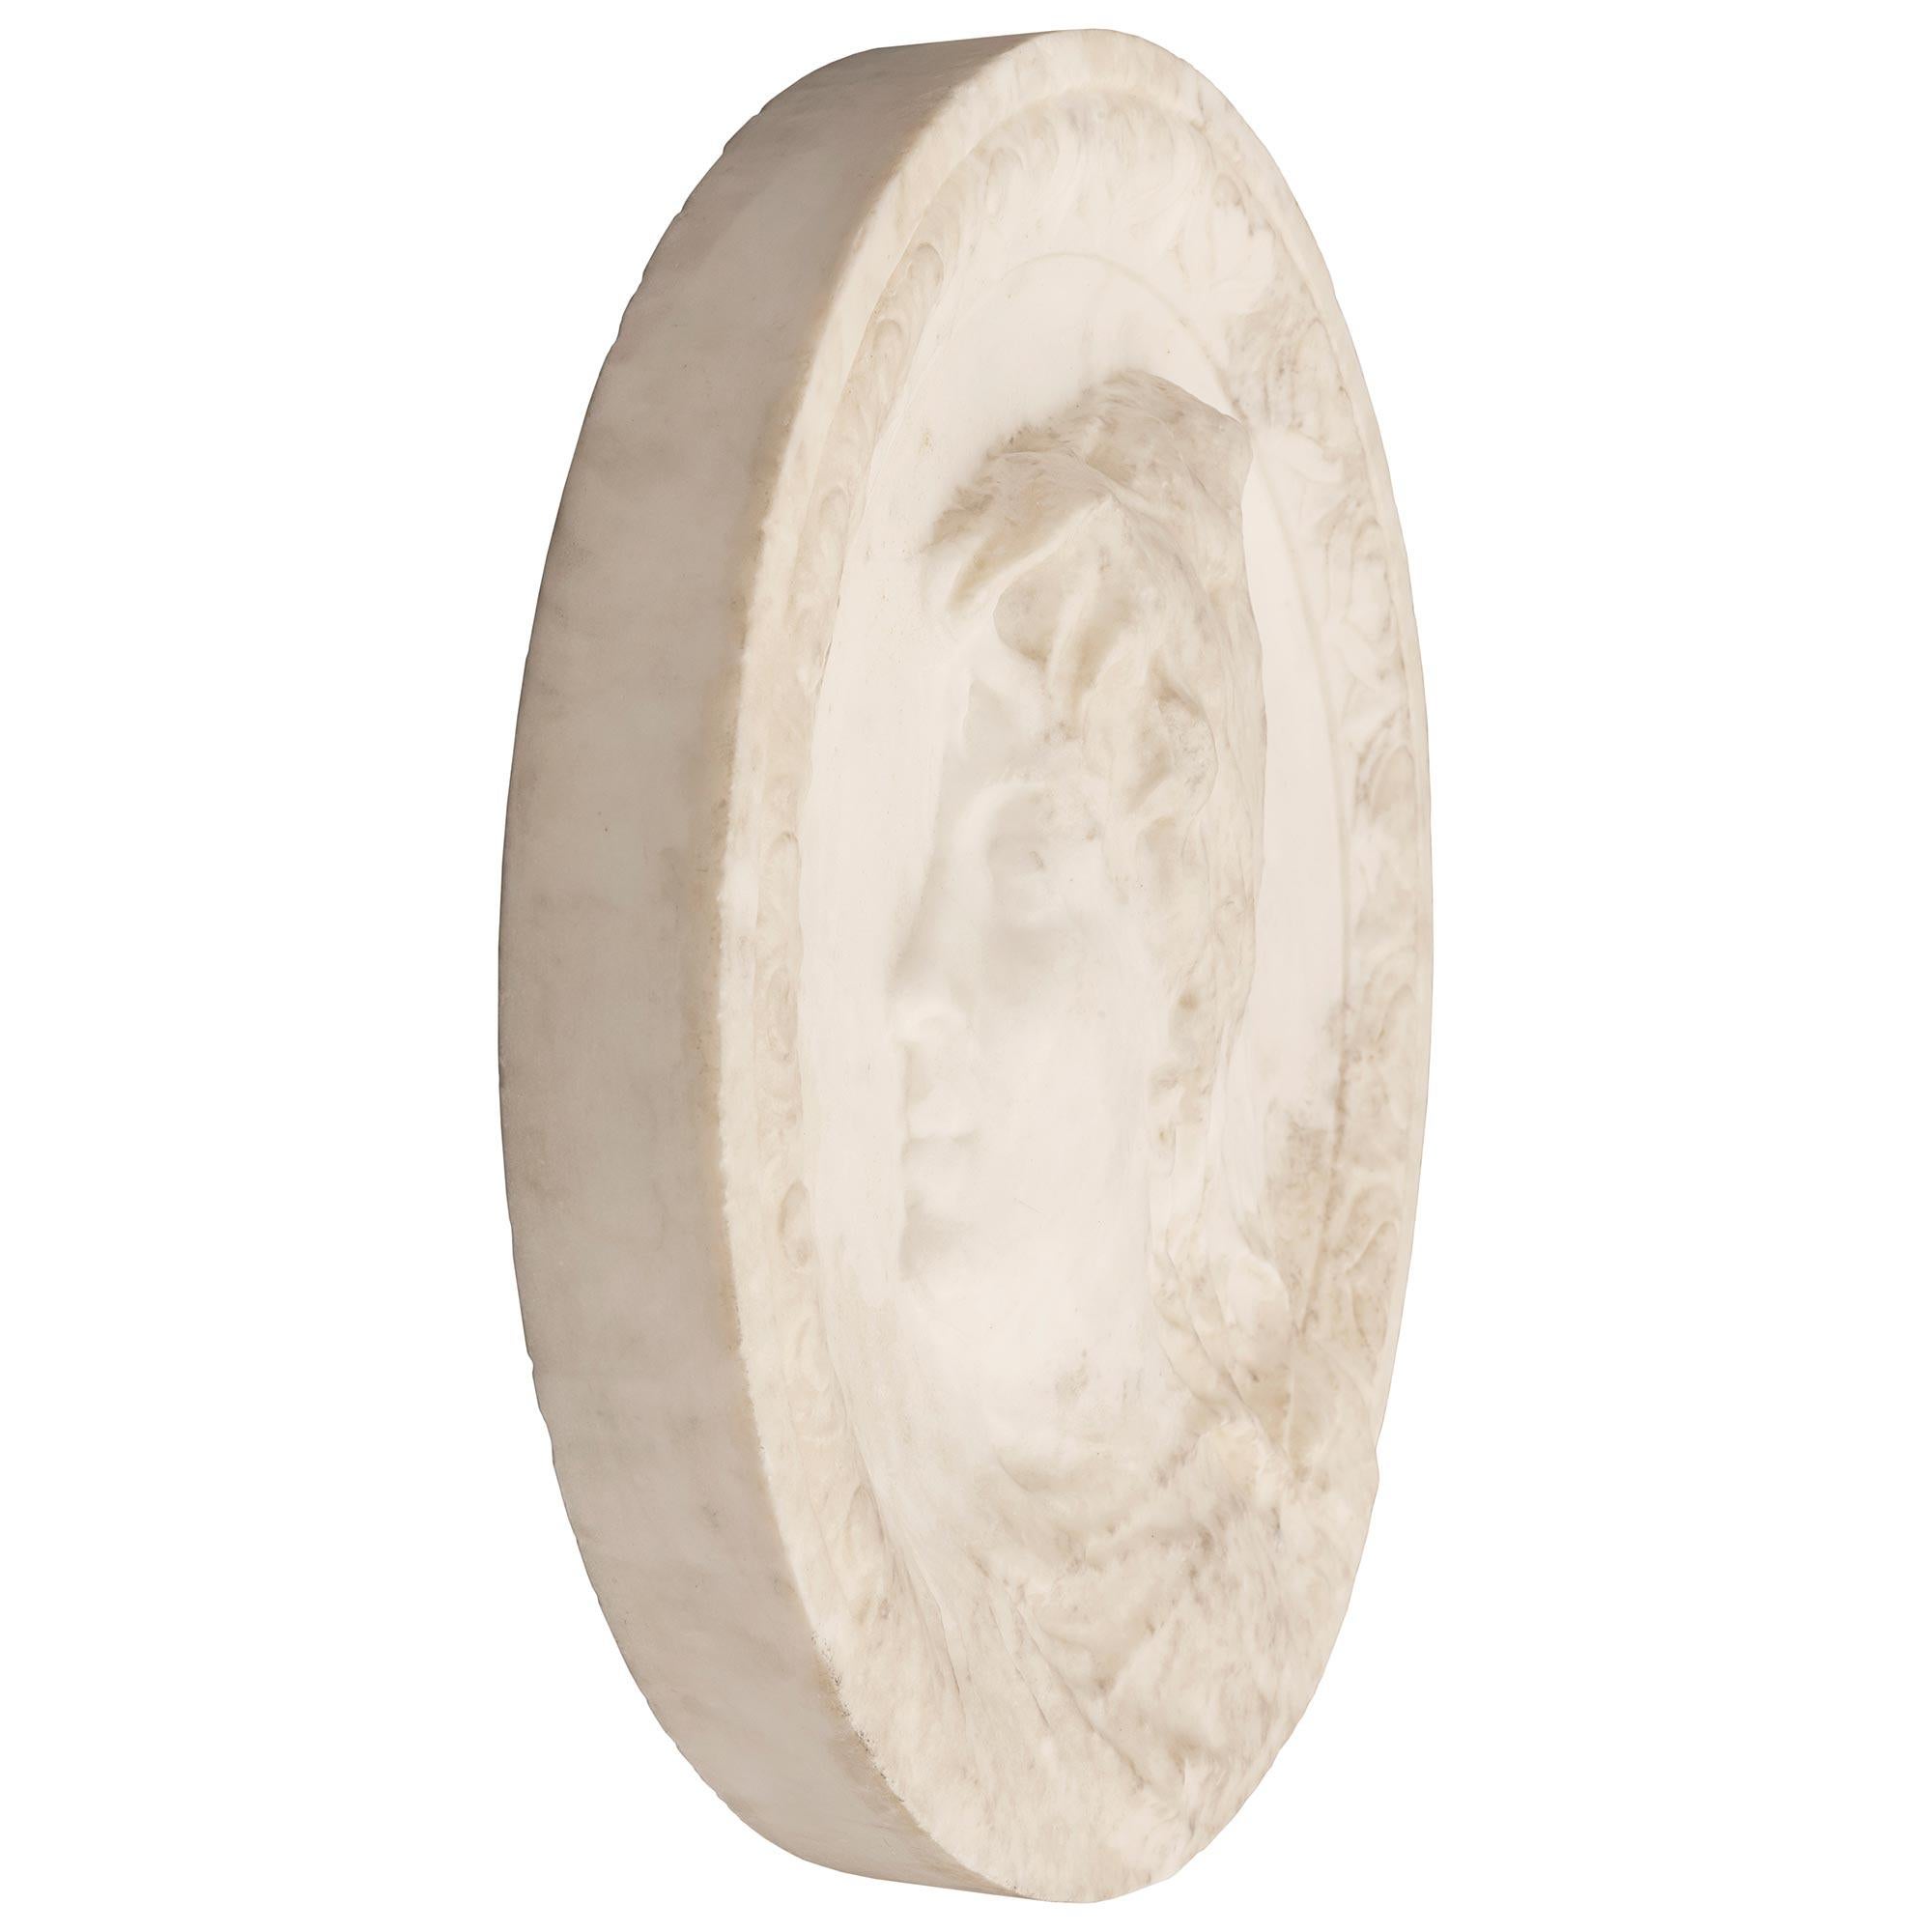 Remarquable plaque italienne en marbre blanc de Carrare du XIXe siècle. La plaque circulaire en marbre blanc massif de Carrare représente le profil d'un bel homme au chapeau, merveilleusement exécuté, encadré dans une charmante bordure feuillagée en